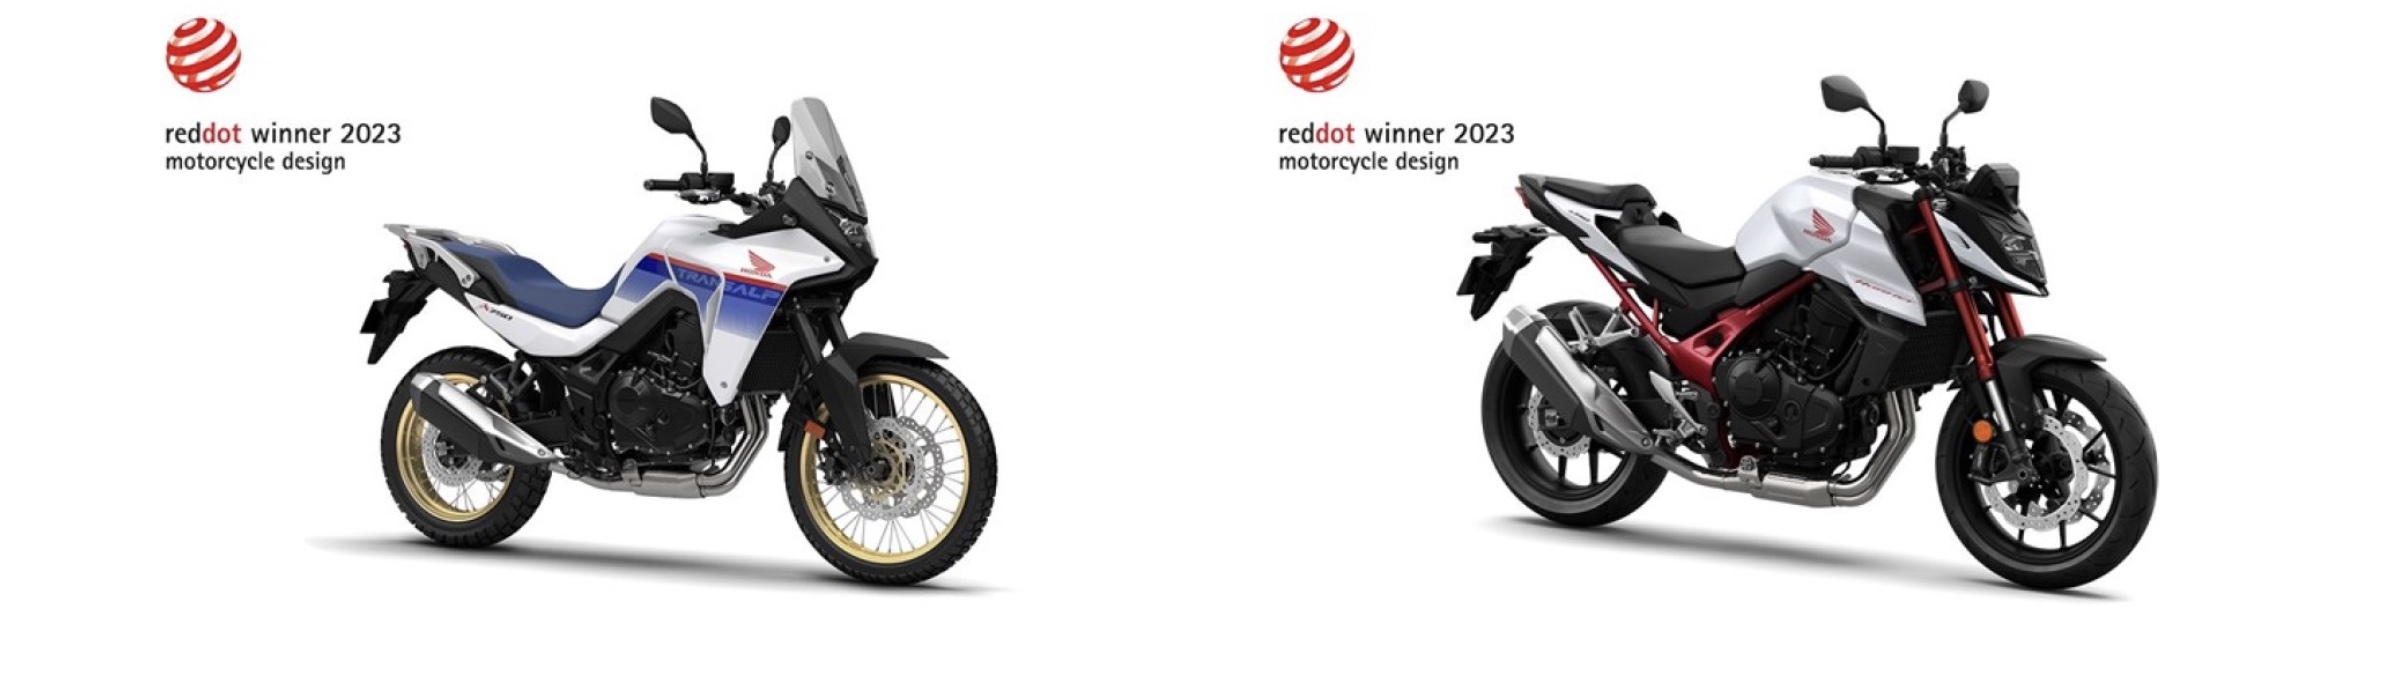 本田的红点冠军:新大黄蜂，和XL750 Transalp。媒体来源:摩托车运动。